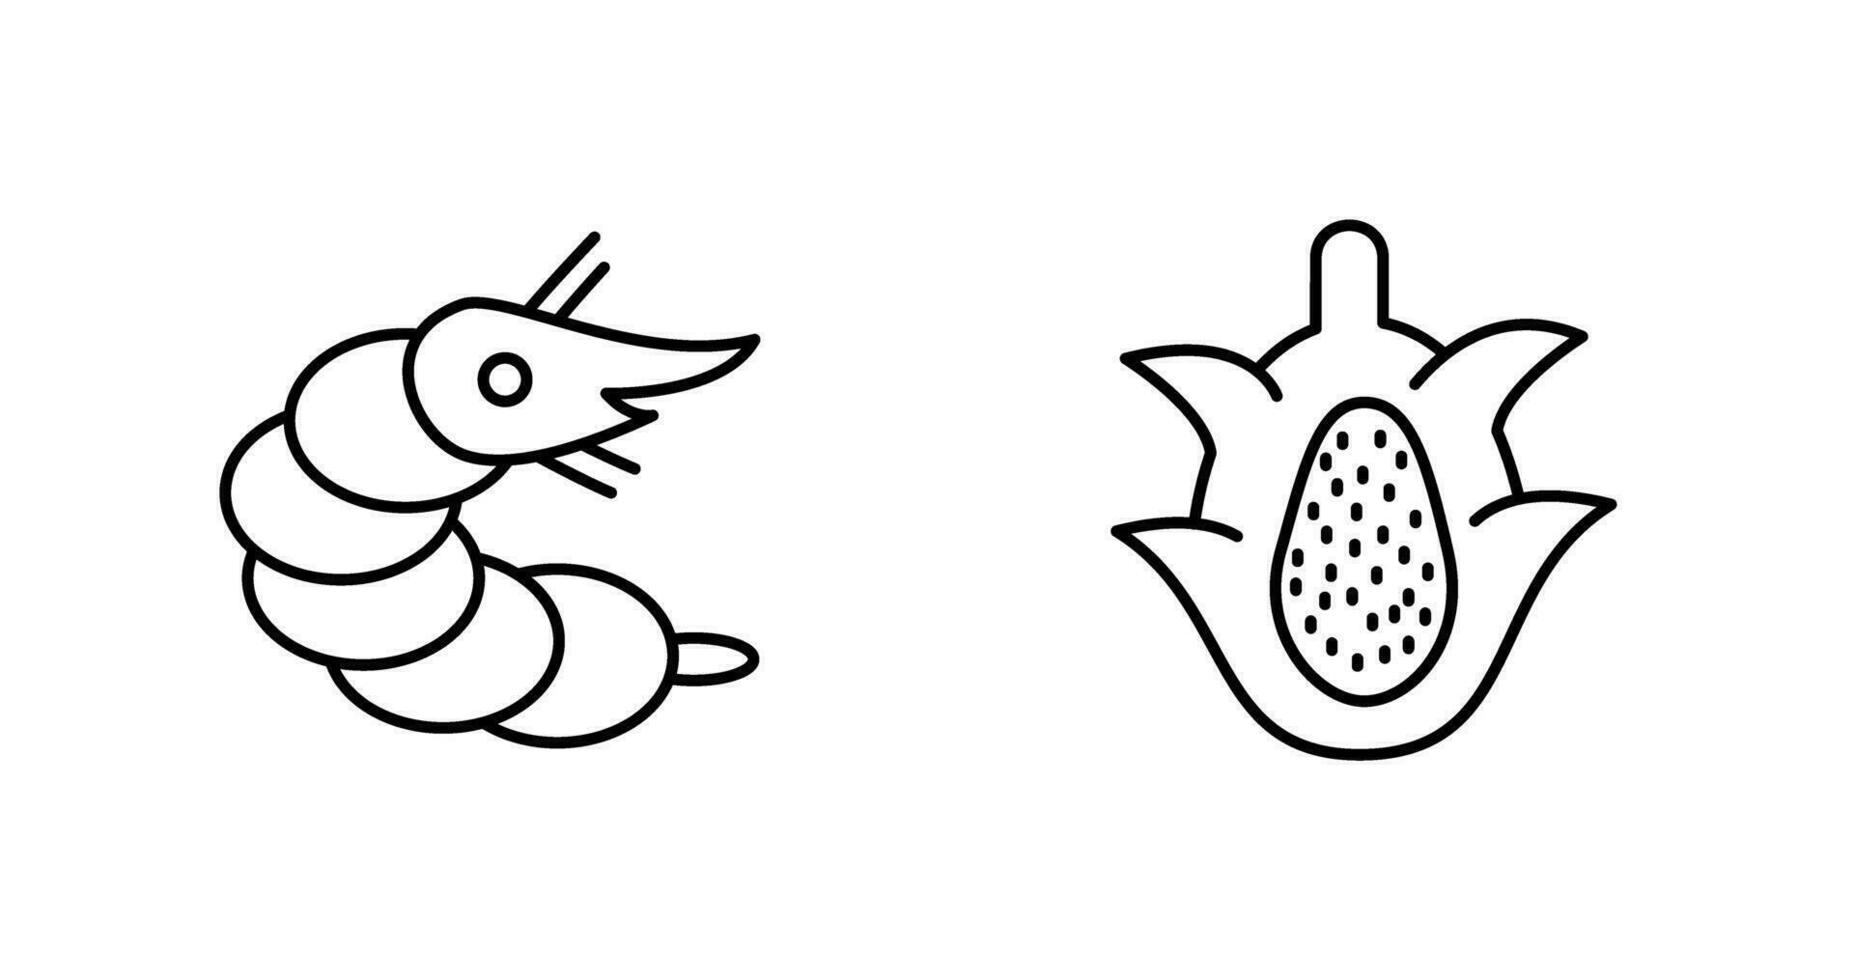 crevette et dragon fruit icône vecteur